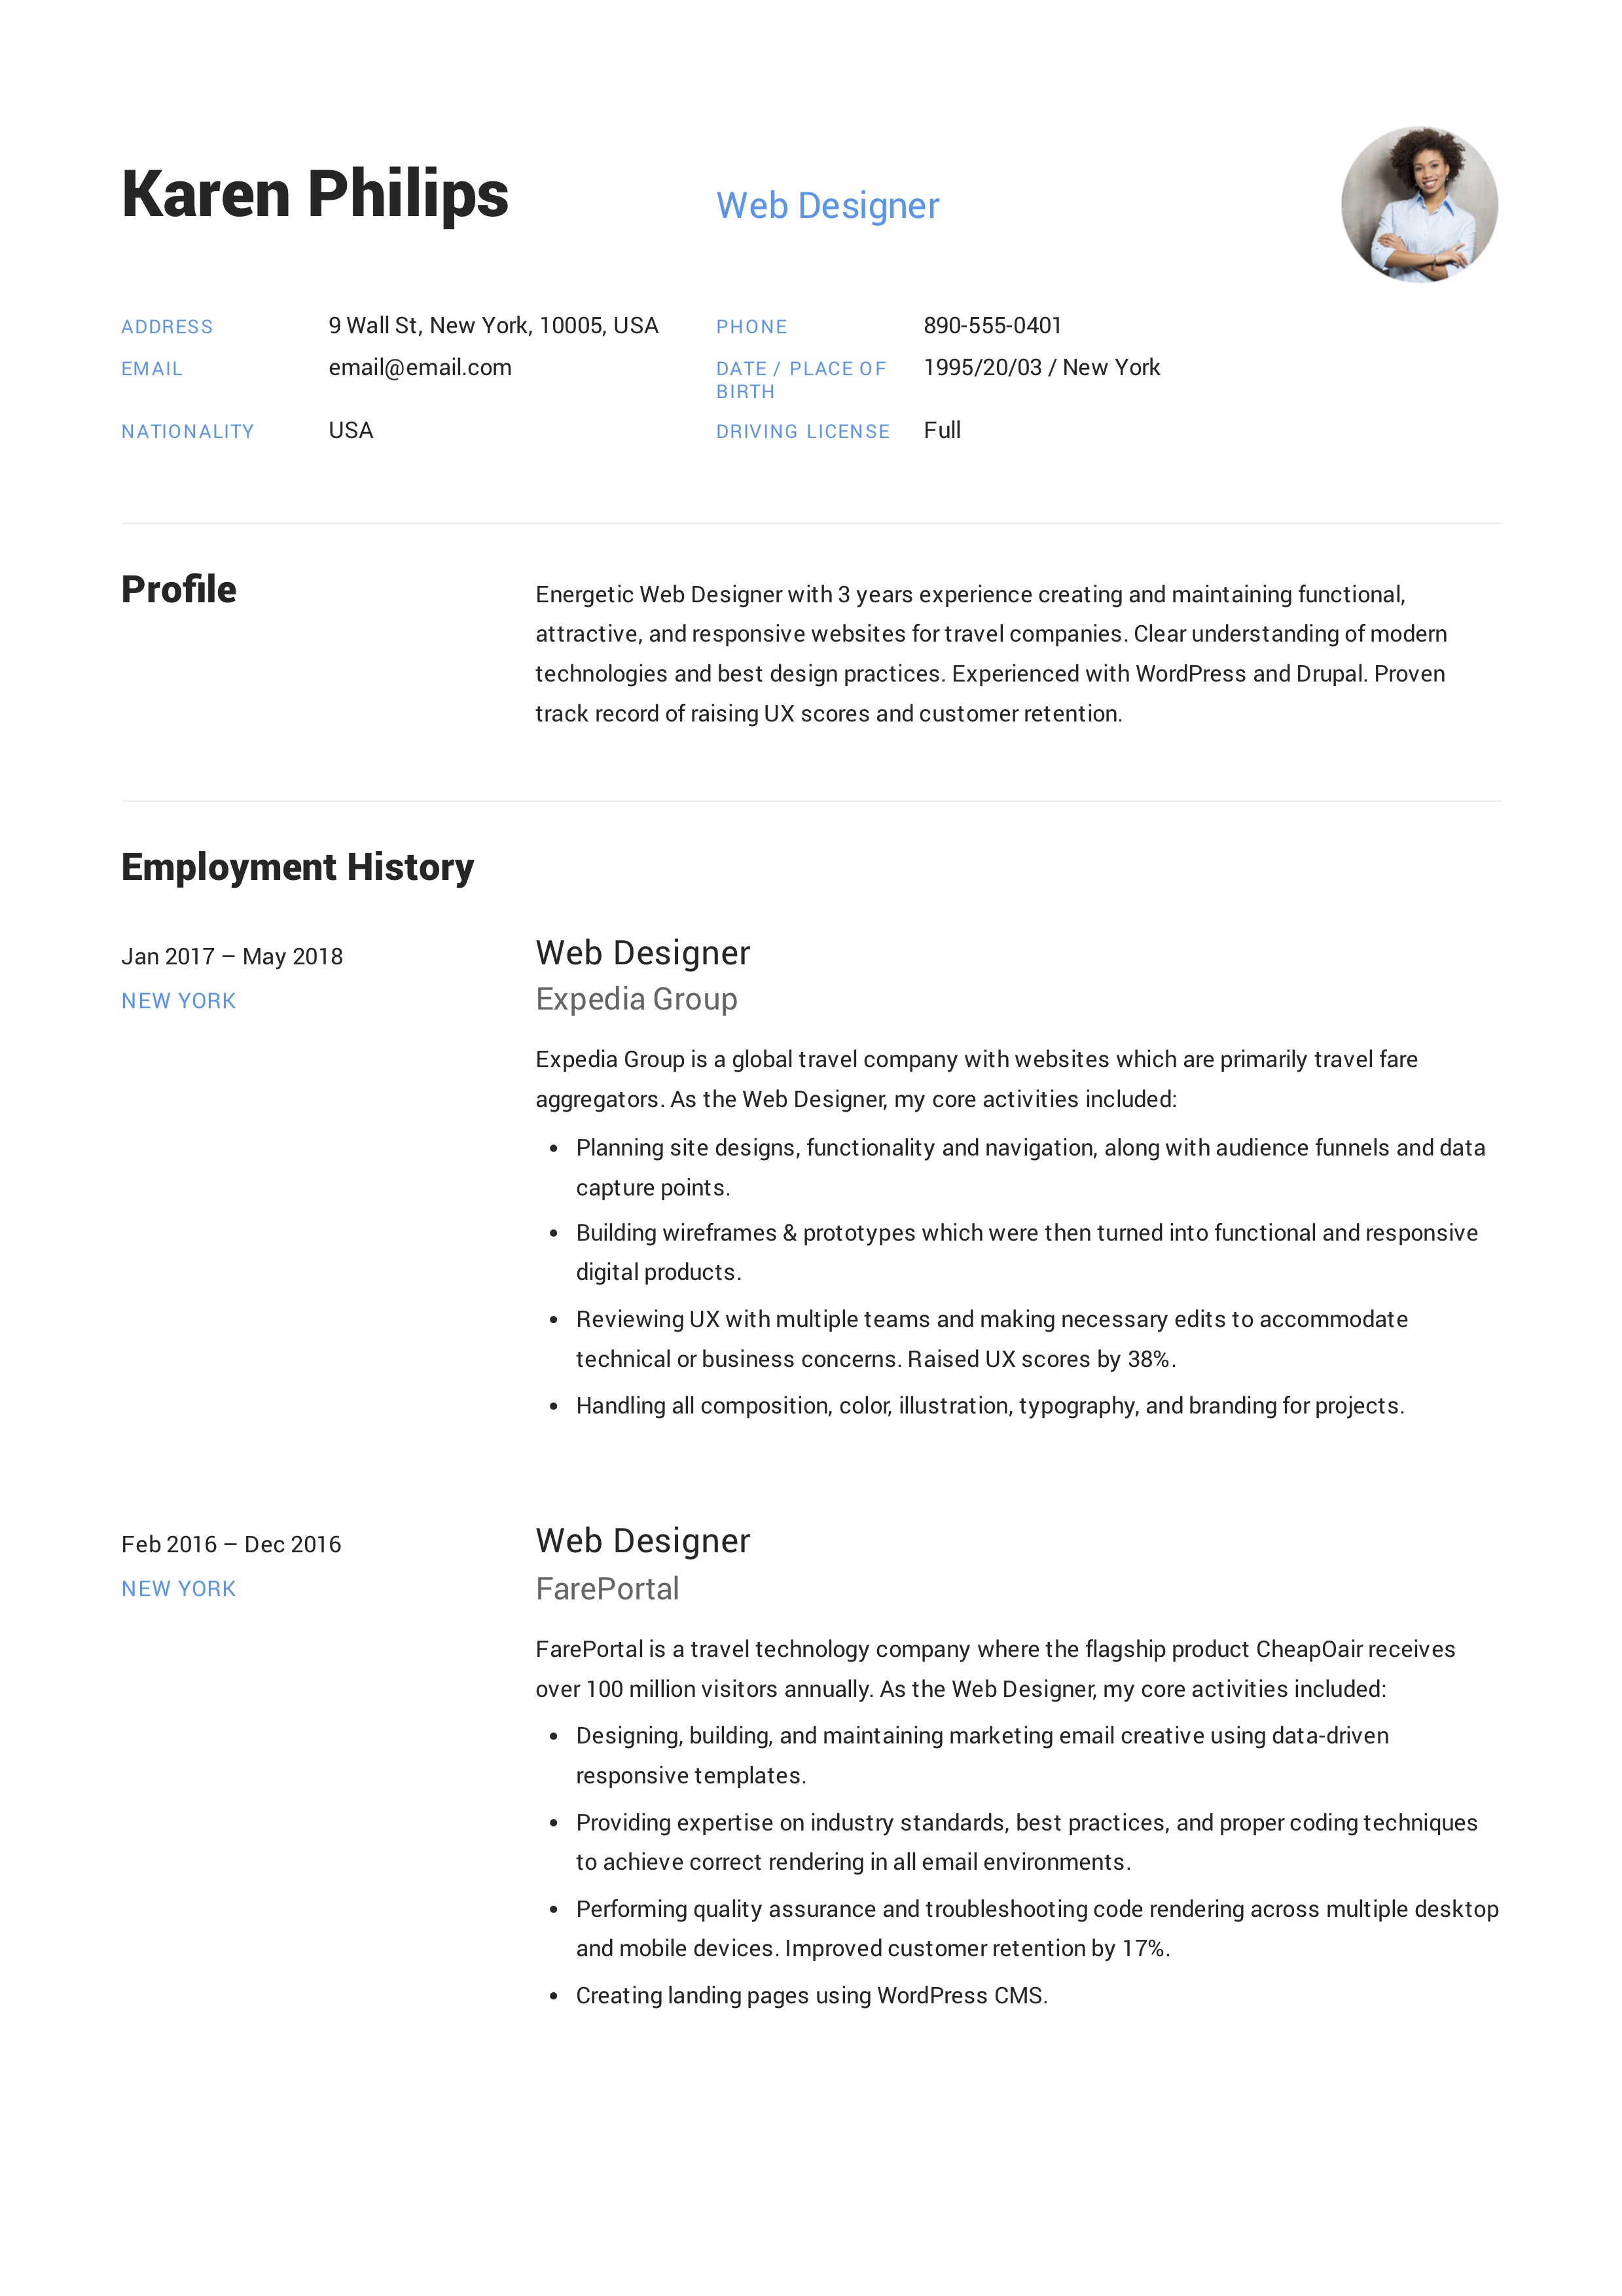 Web designer clean resume